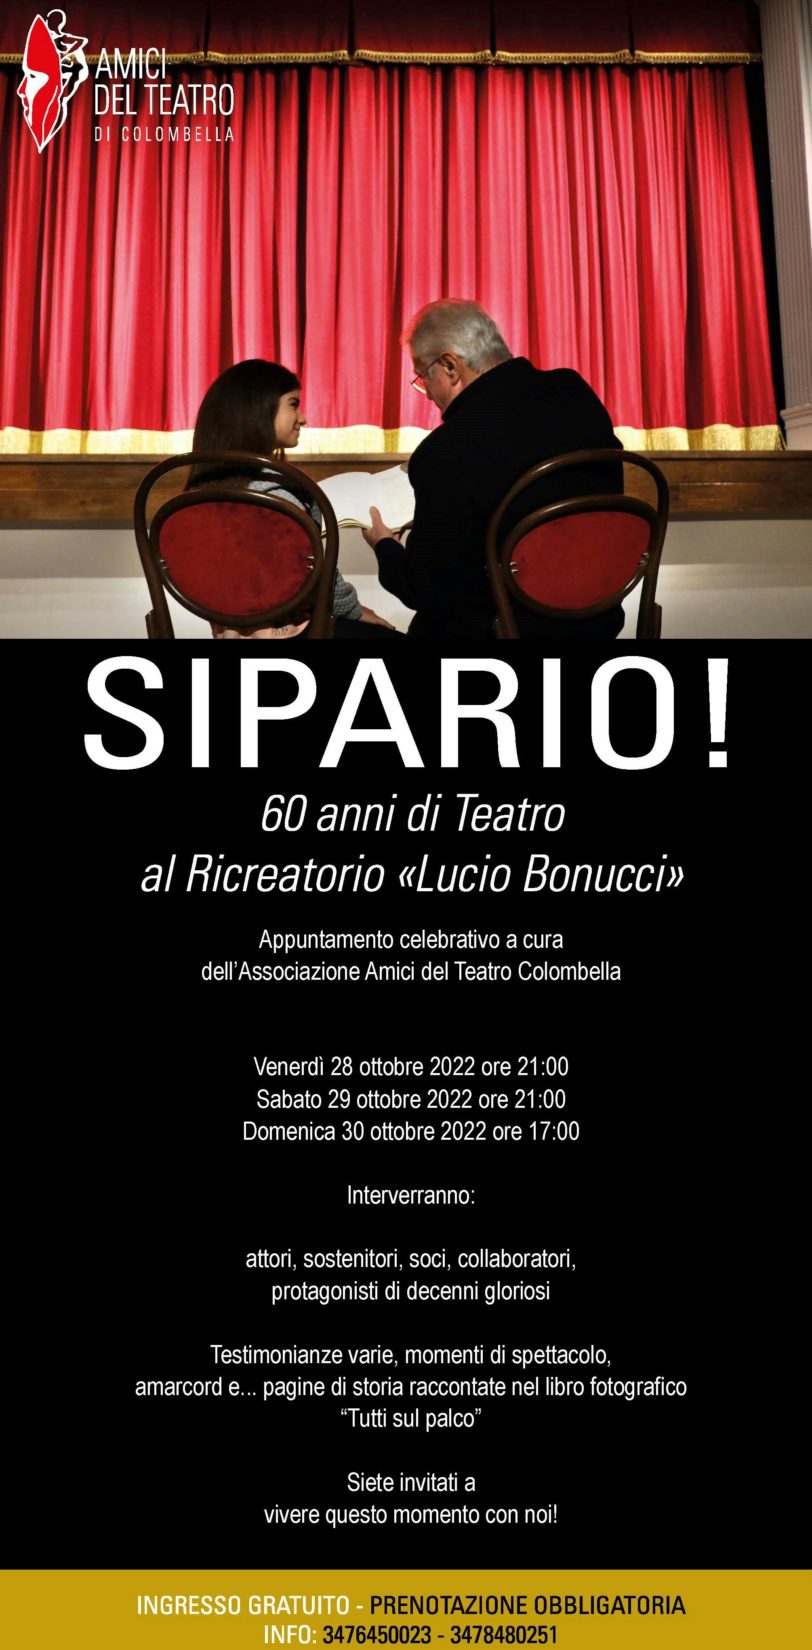 Sipario! 60 anni di Teatro al Ricreatorio “Lucio Bonucci”